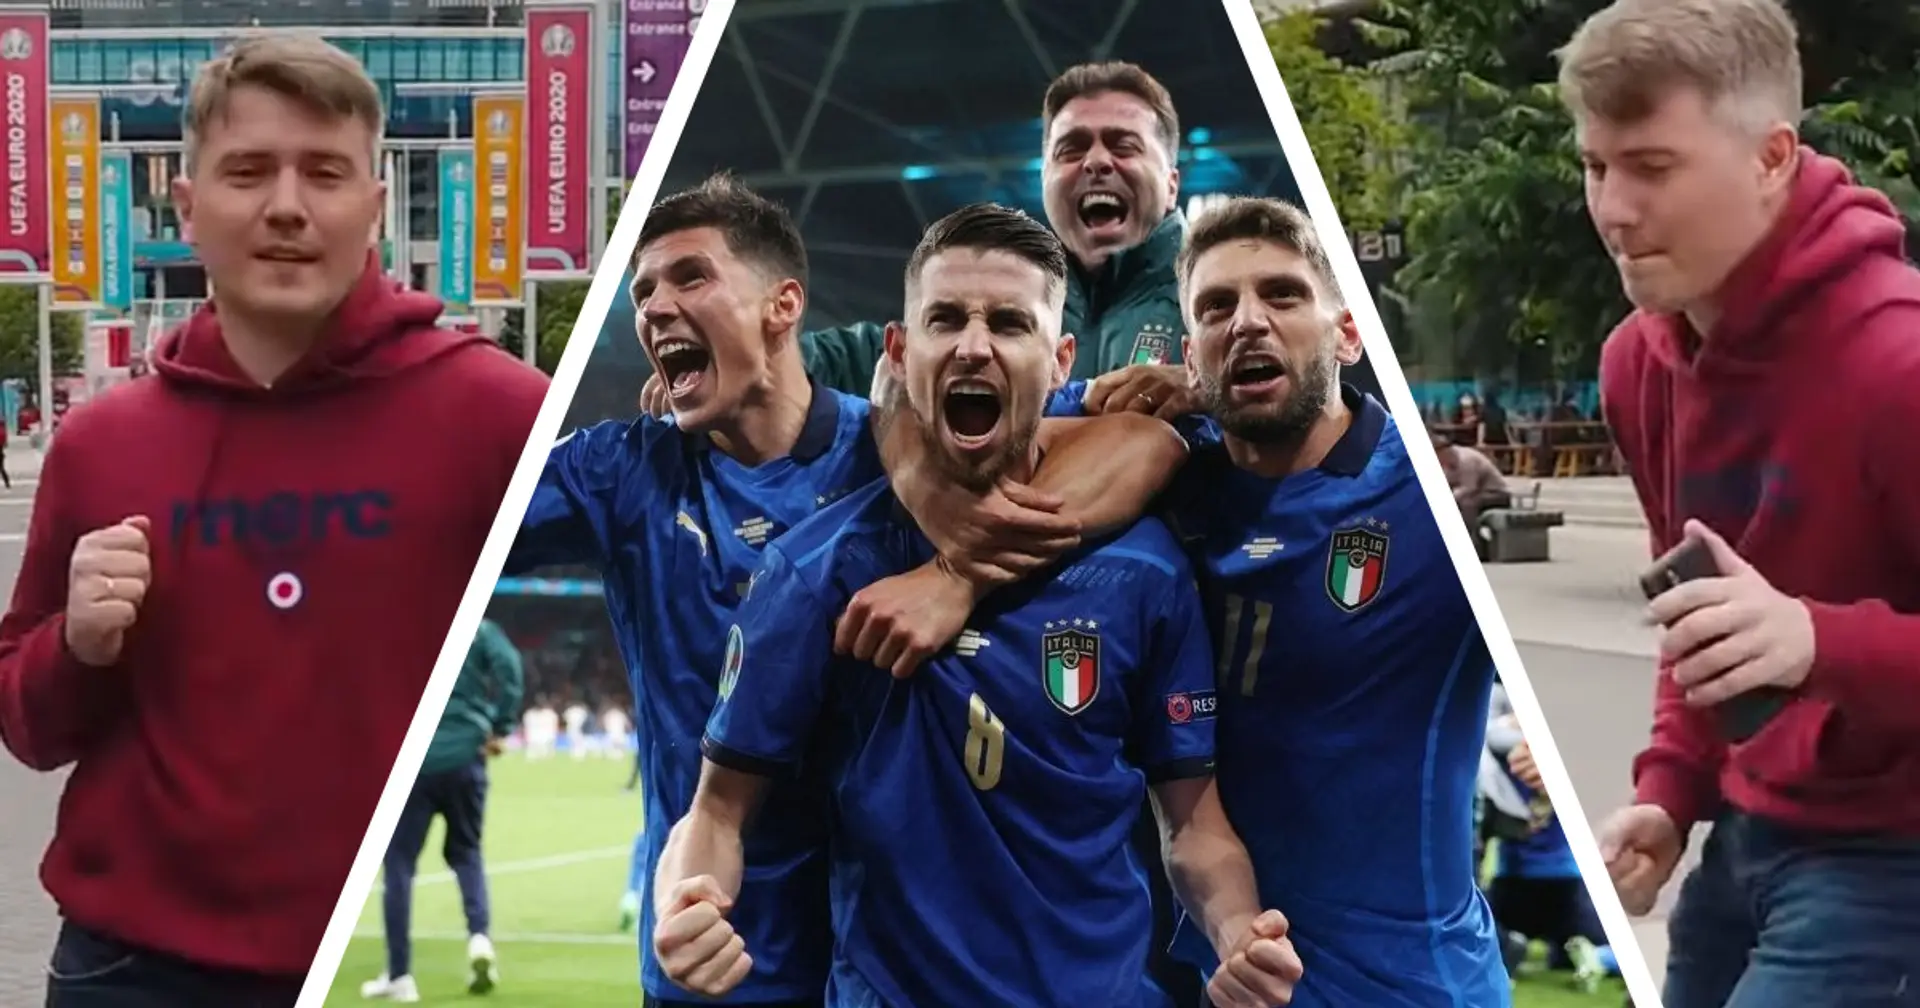 Tutti pazzi per gli Azzurri: l'esultanza del giornalista dopo la vittoria sulla Spagna è virale, "Forza Italia"